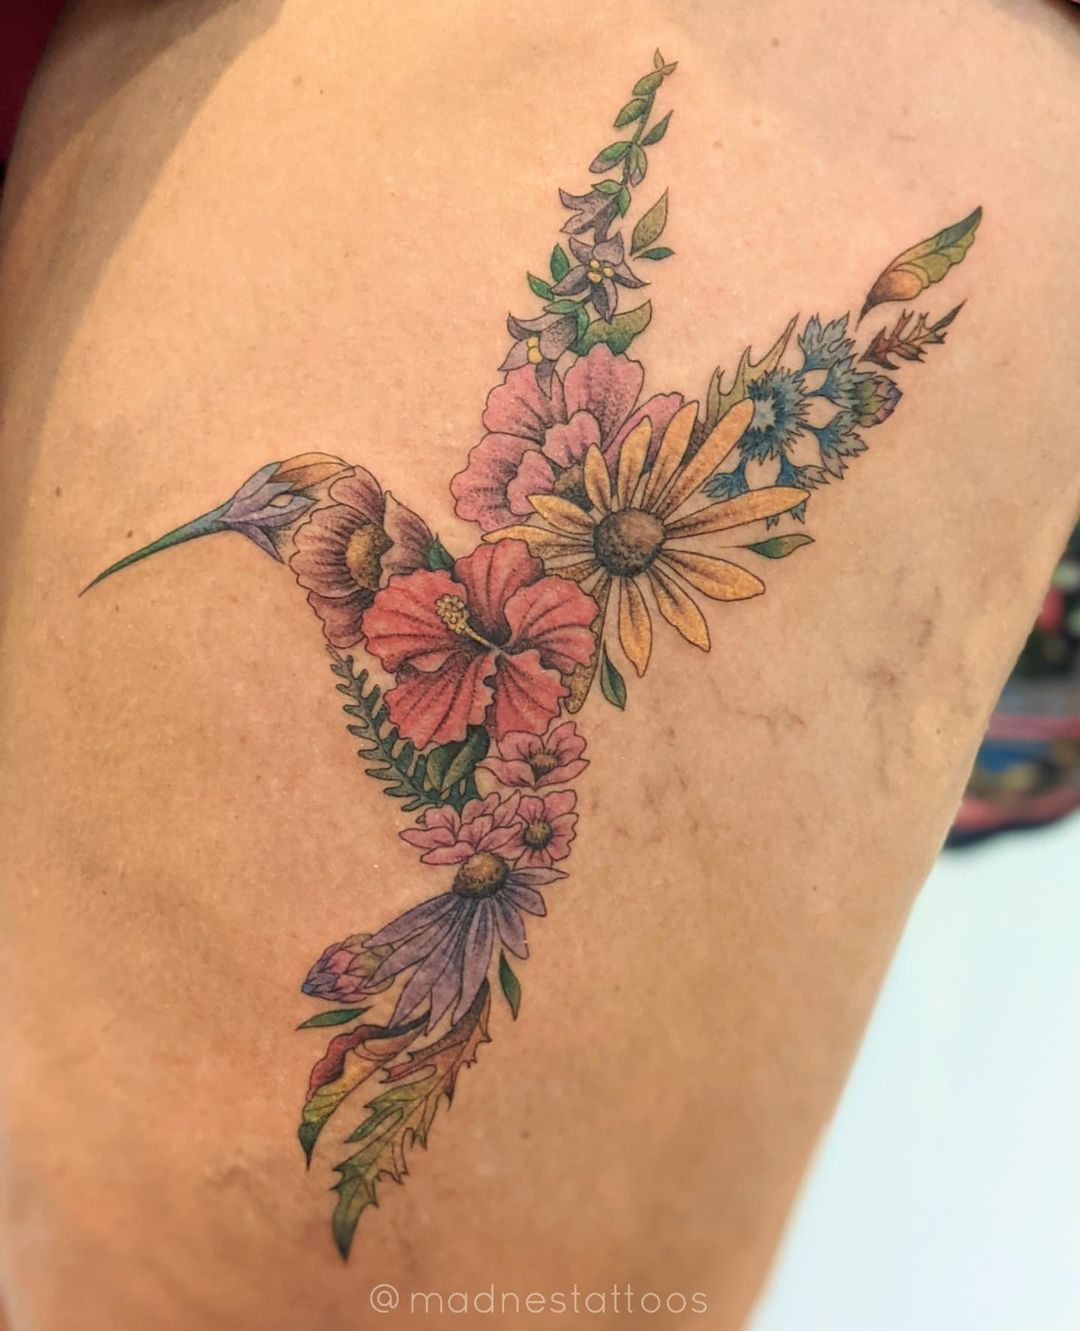 Tatuaje floral de colibrí